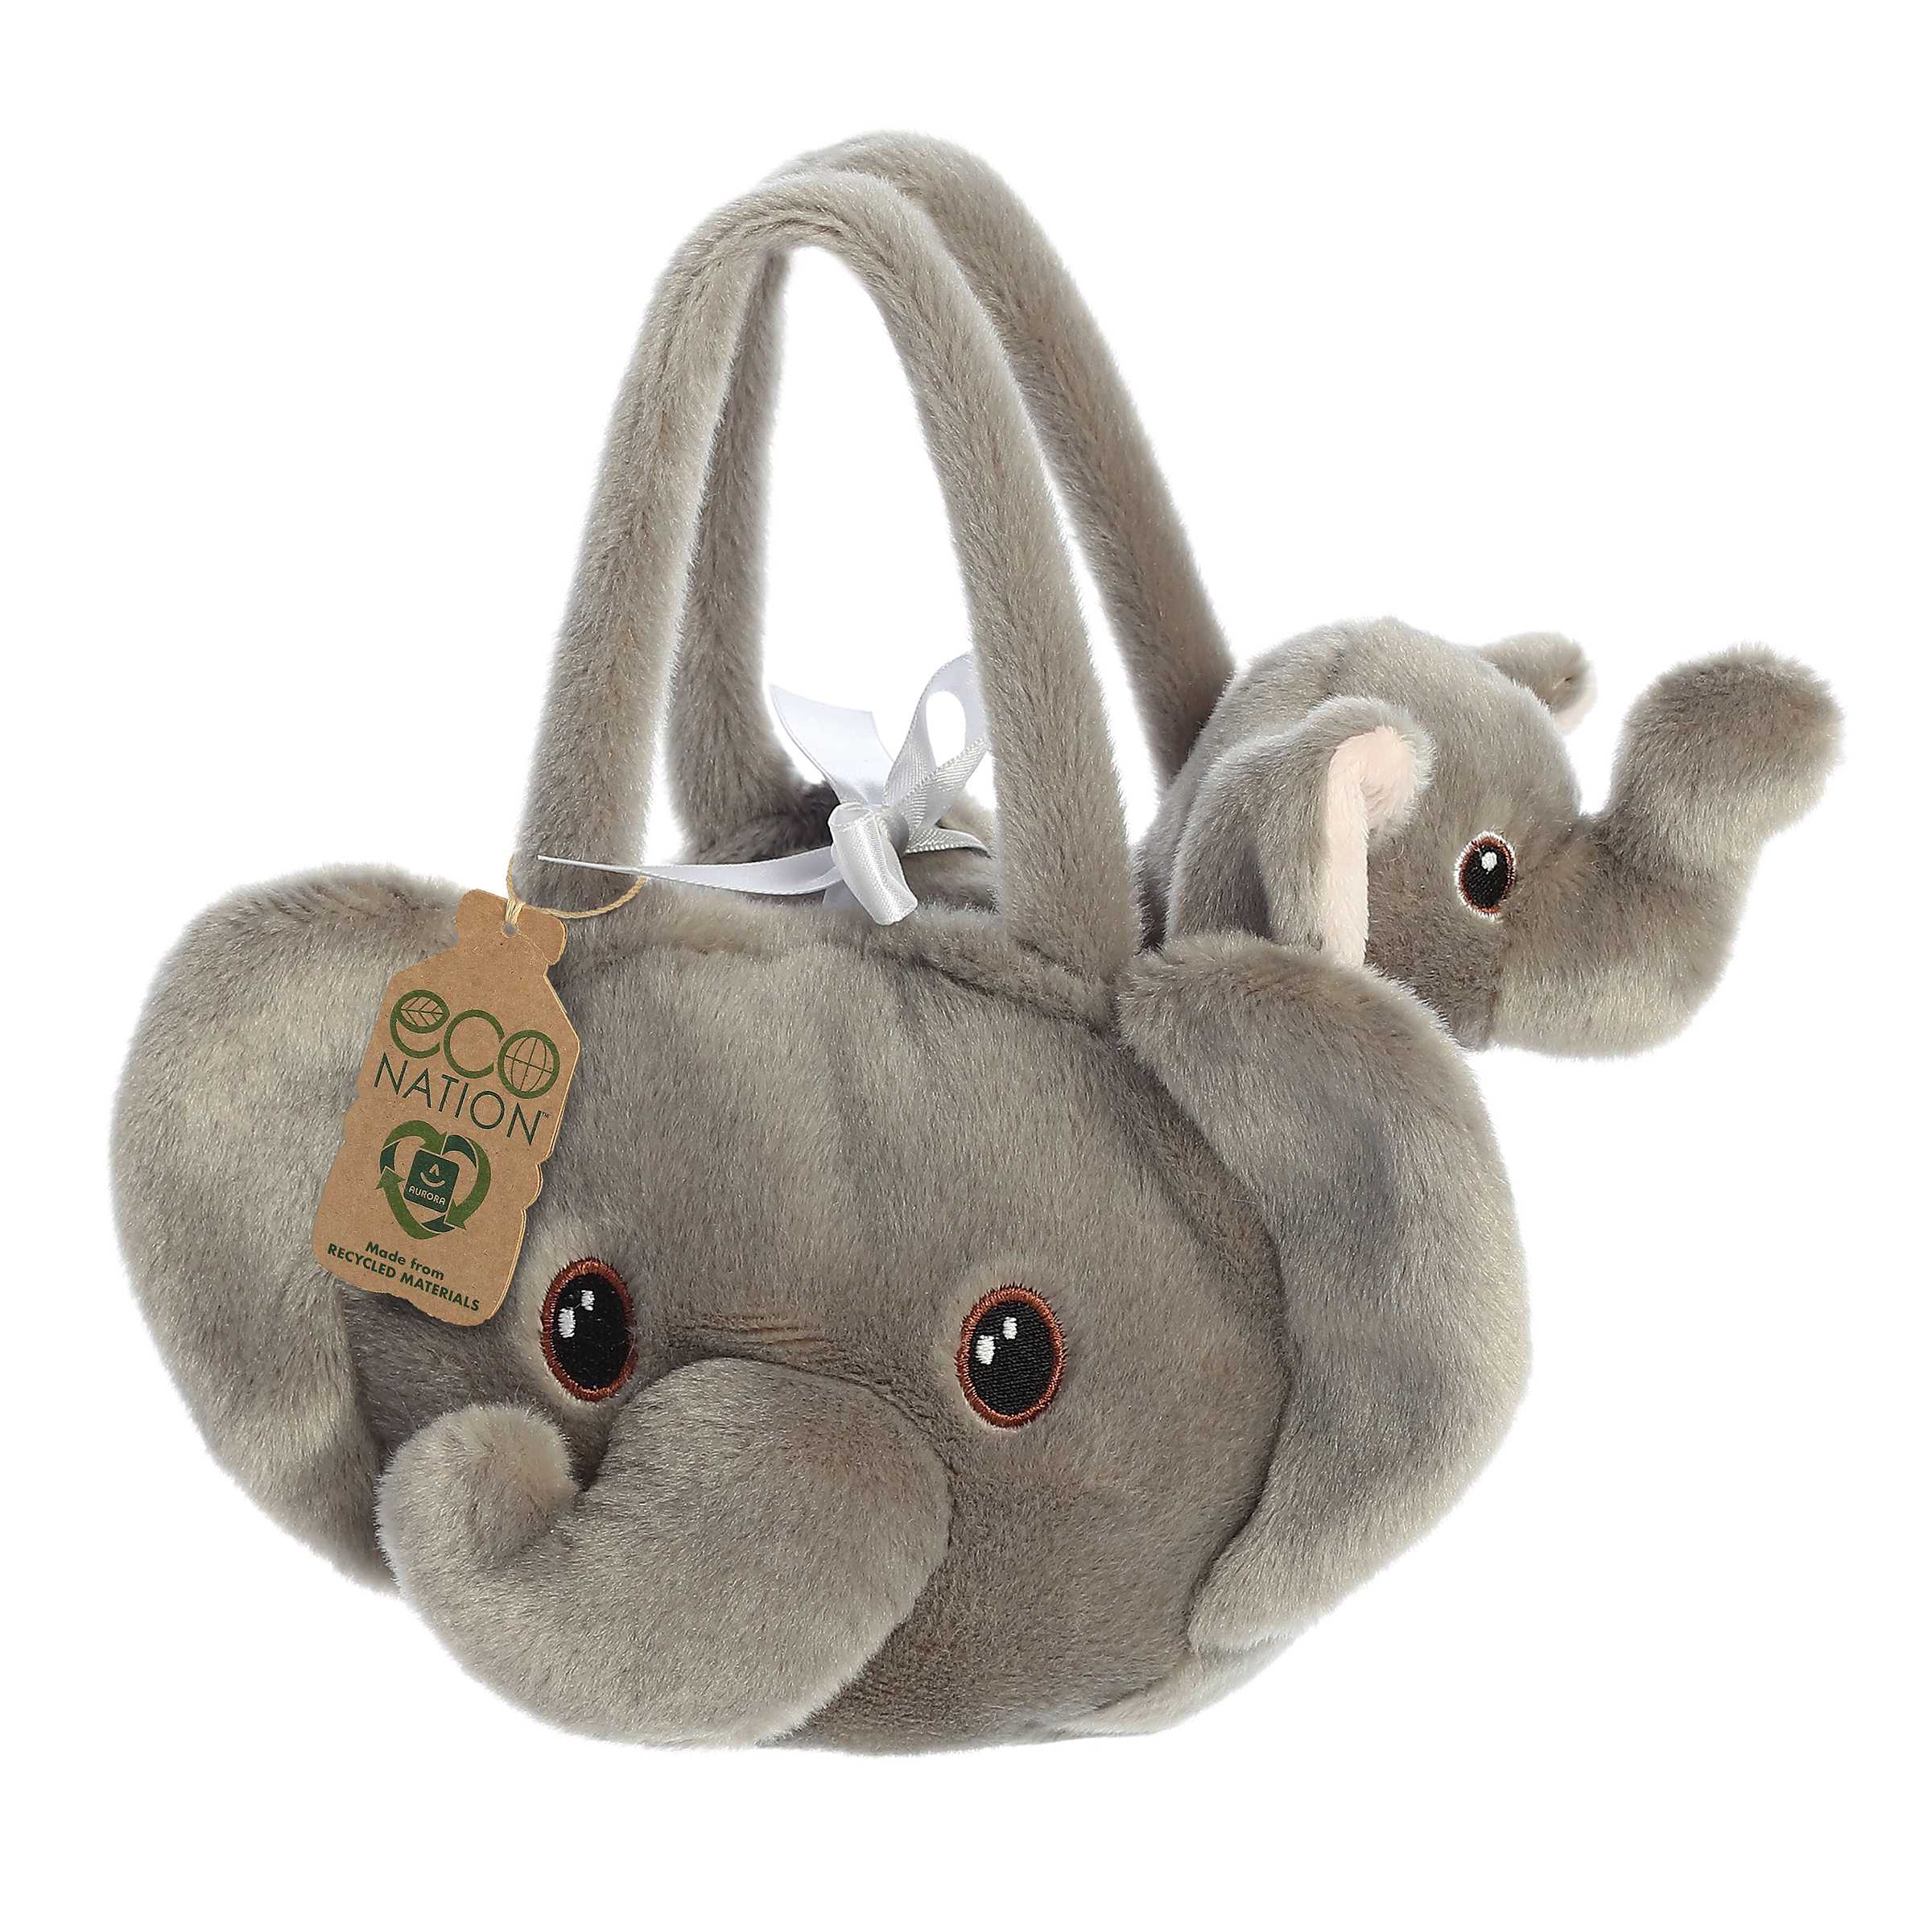 Aurora® - Eco Nation™ - 8" Baby Elephant